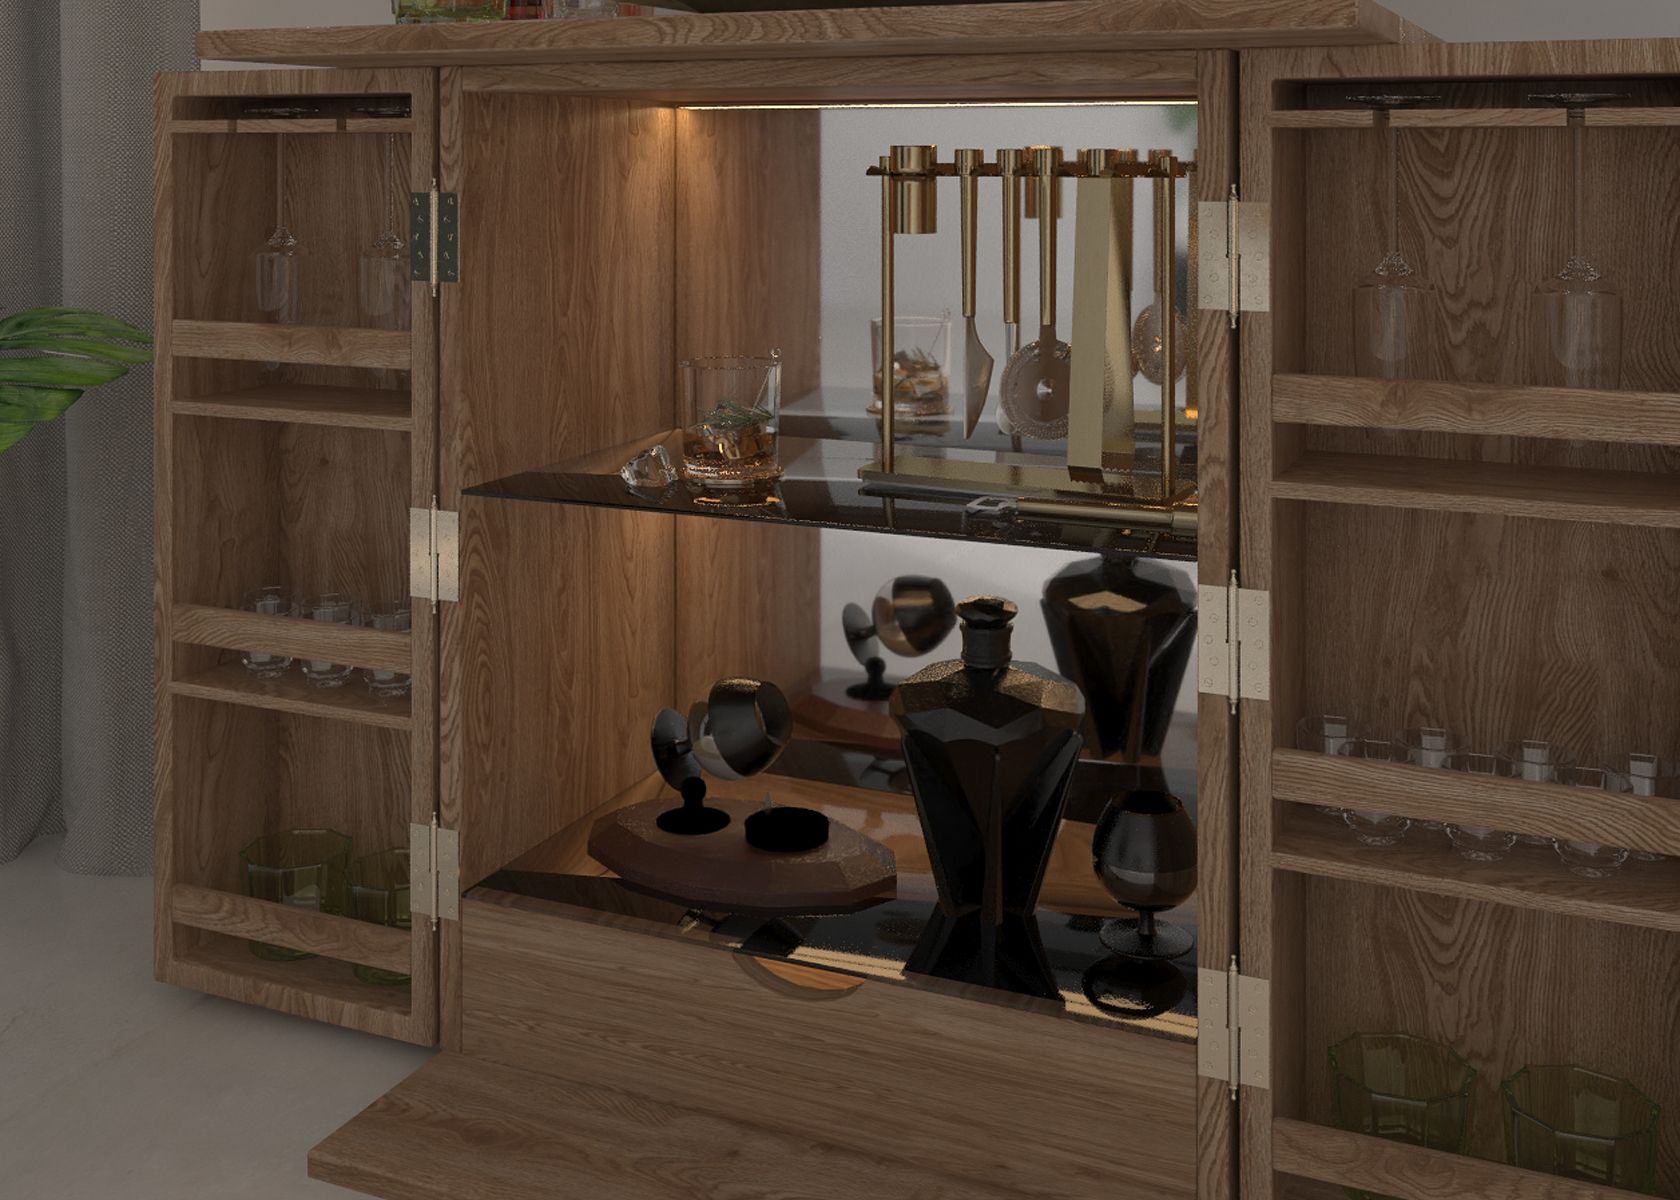 Tủ rượu gỗ sồi đa chức năng - Với ngăn đựng rượu, ngăn kệ, và hộc kéo, tủ rượu gỗ sồi đa chức năng tối ưu hóa không gian lưu trữ và phục vụ một cách thông minh và tiện ích